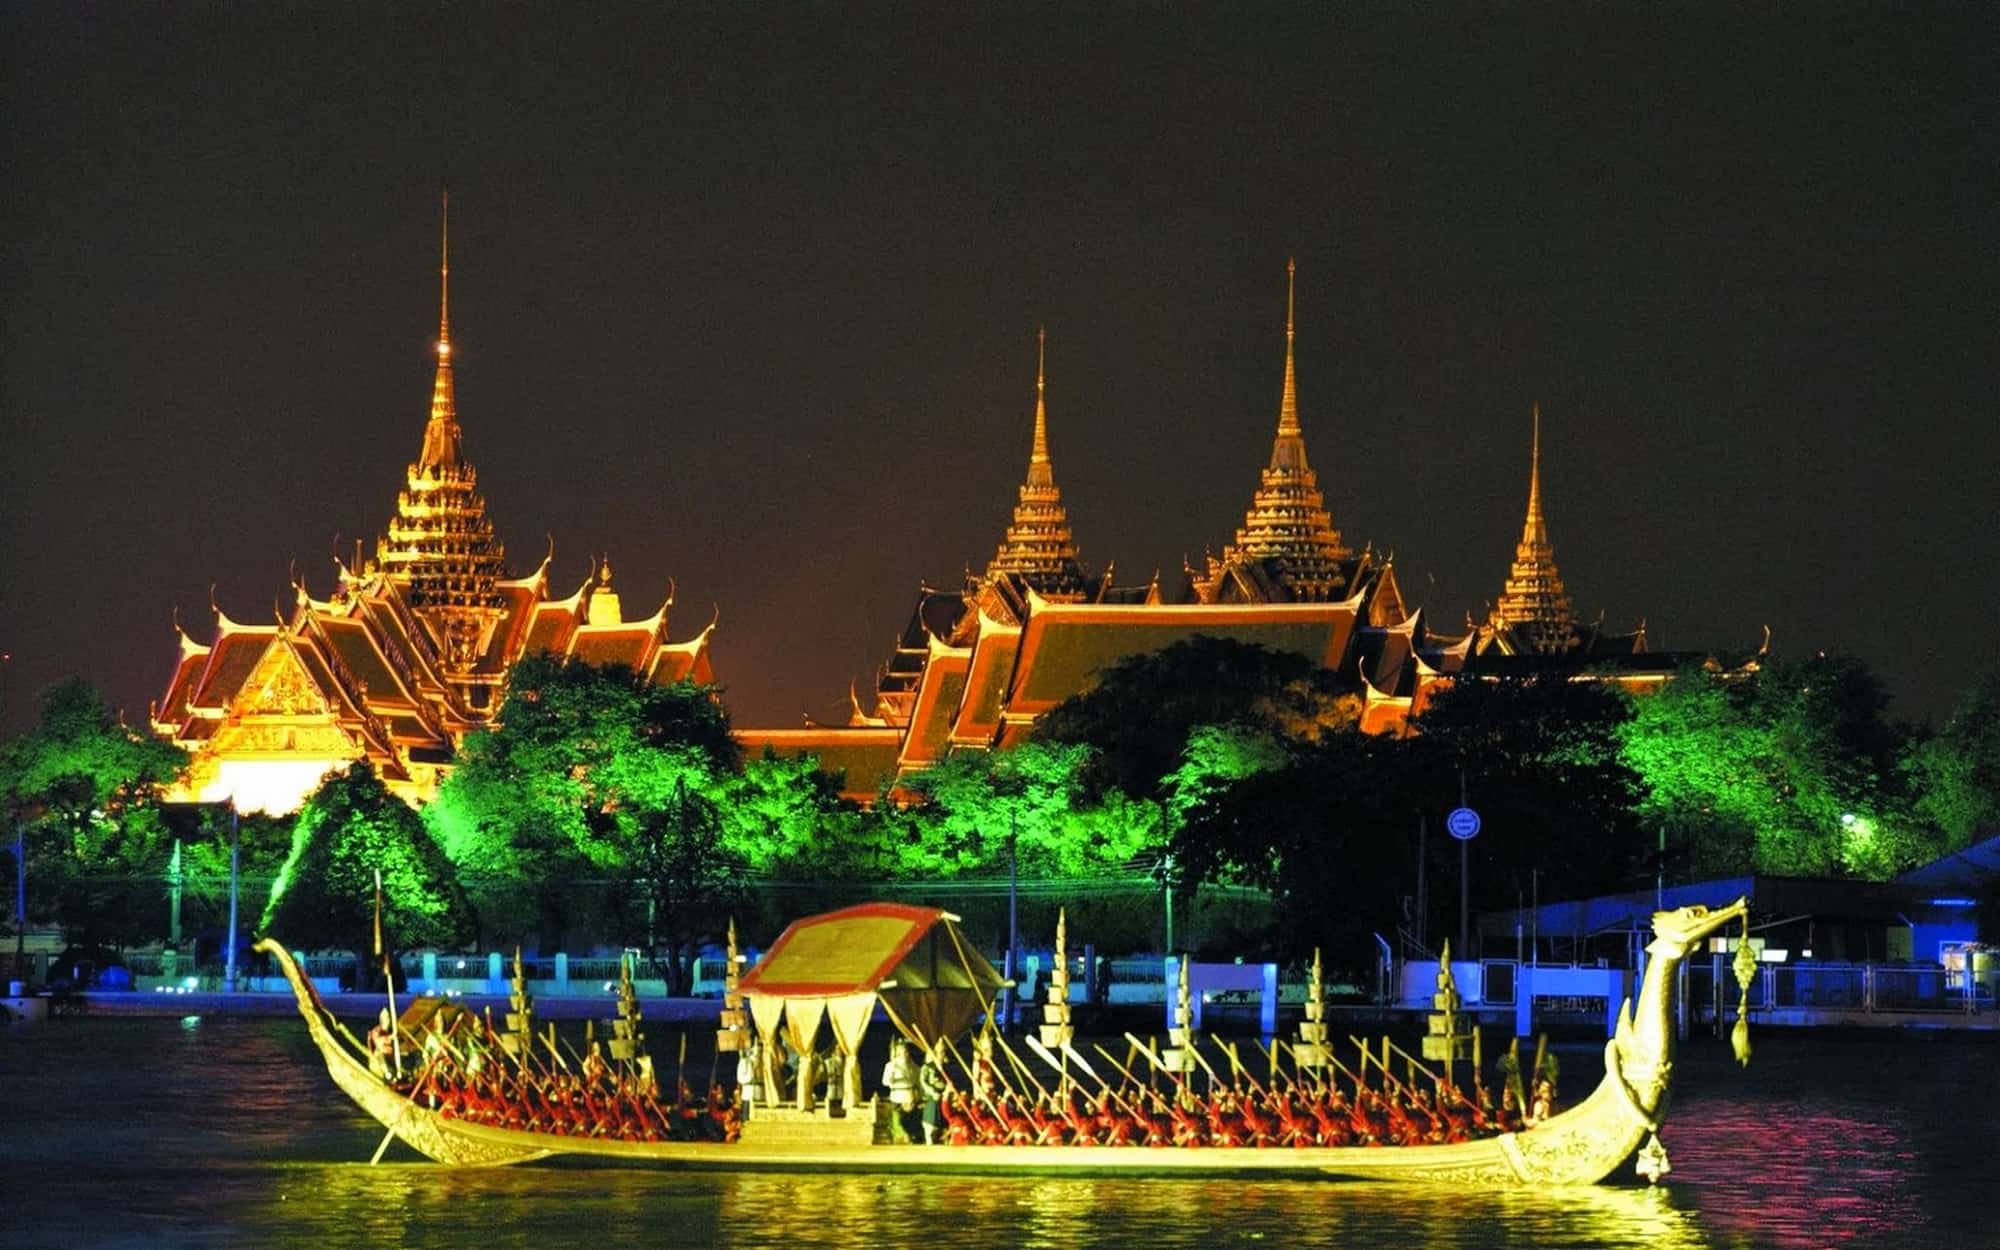 افضل الاماكن السياحيه للزياره بشمال تايلاند | السياحه فى شمال تايلاند